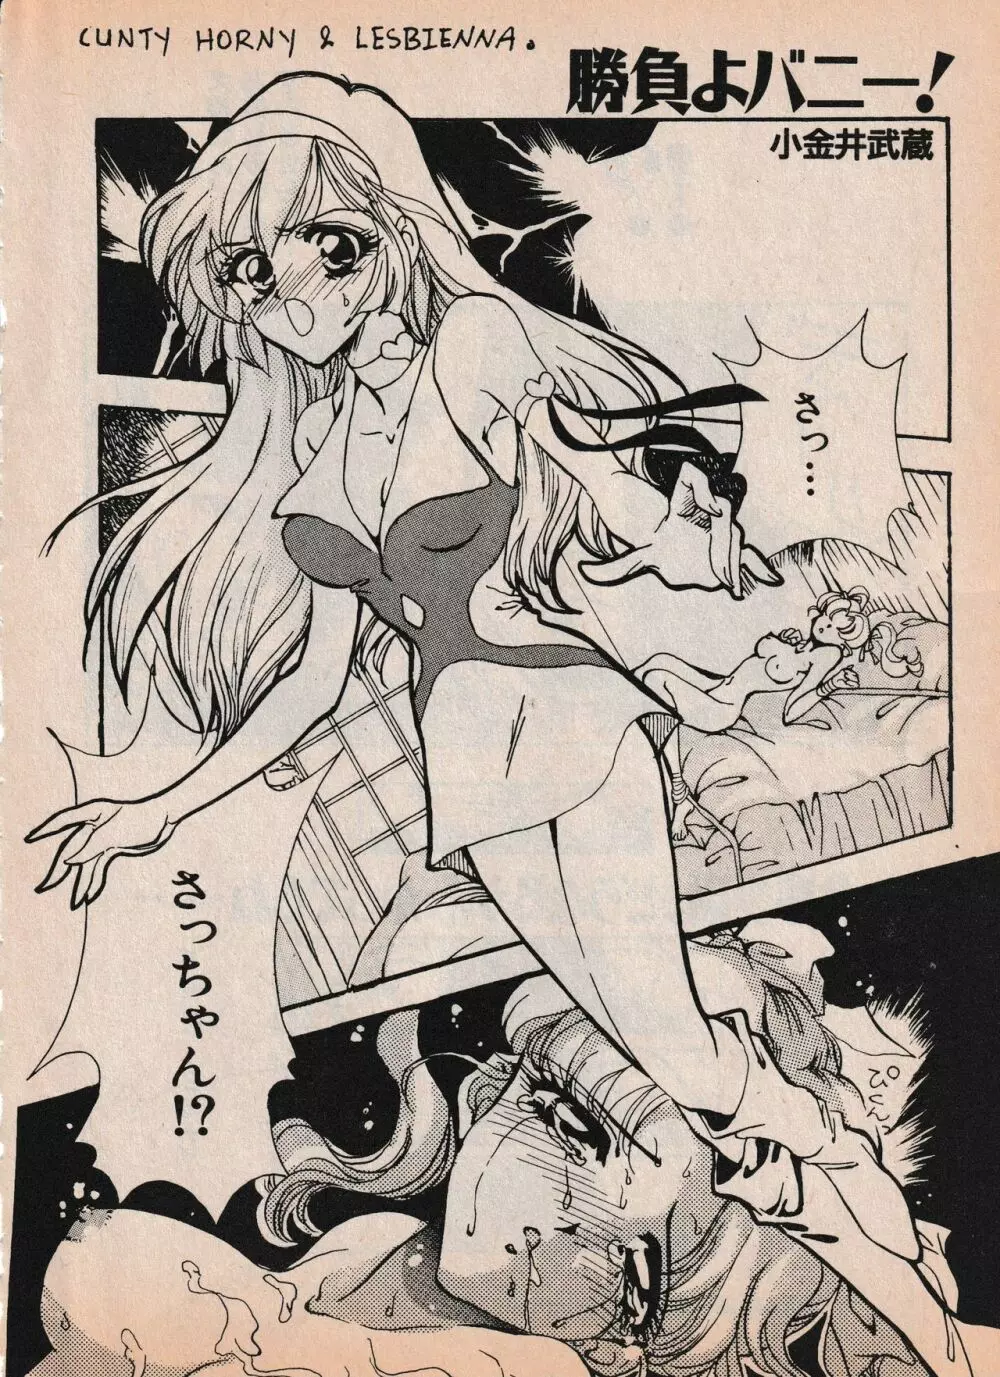 Sailor X vol. 4 – Sailor X vs. Cunty Horny! 97ページ